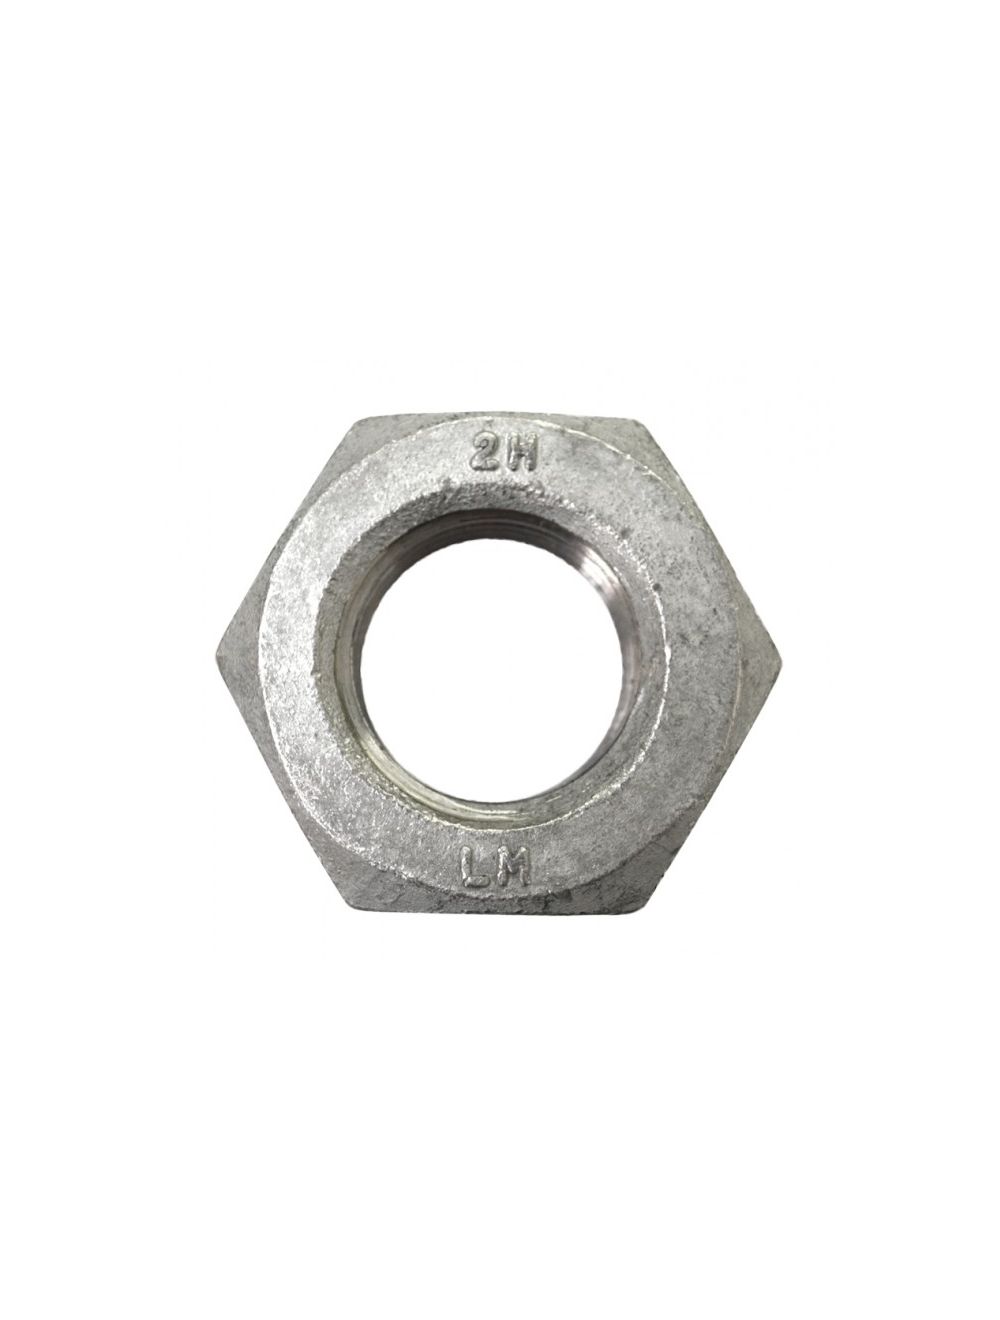 1 1/2-6 Heavy Hex Nut A563 Grade A Steel/Plain Quantity: 30 pcs 